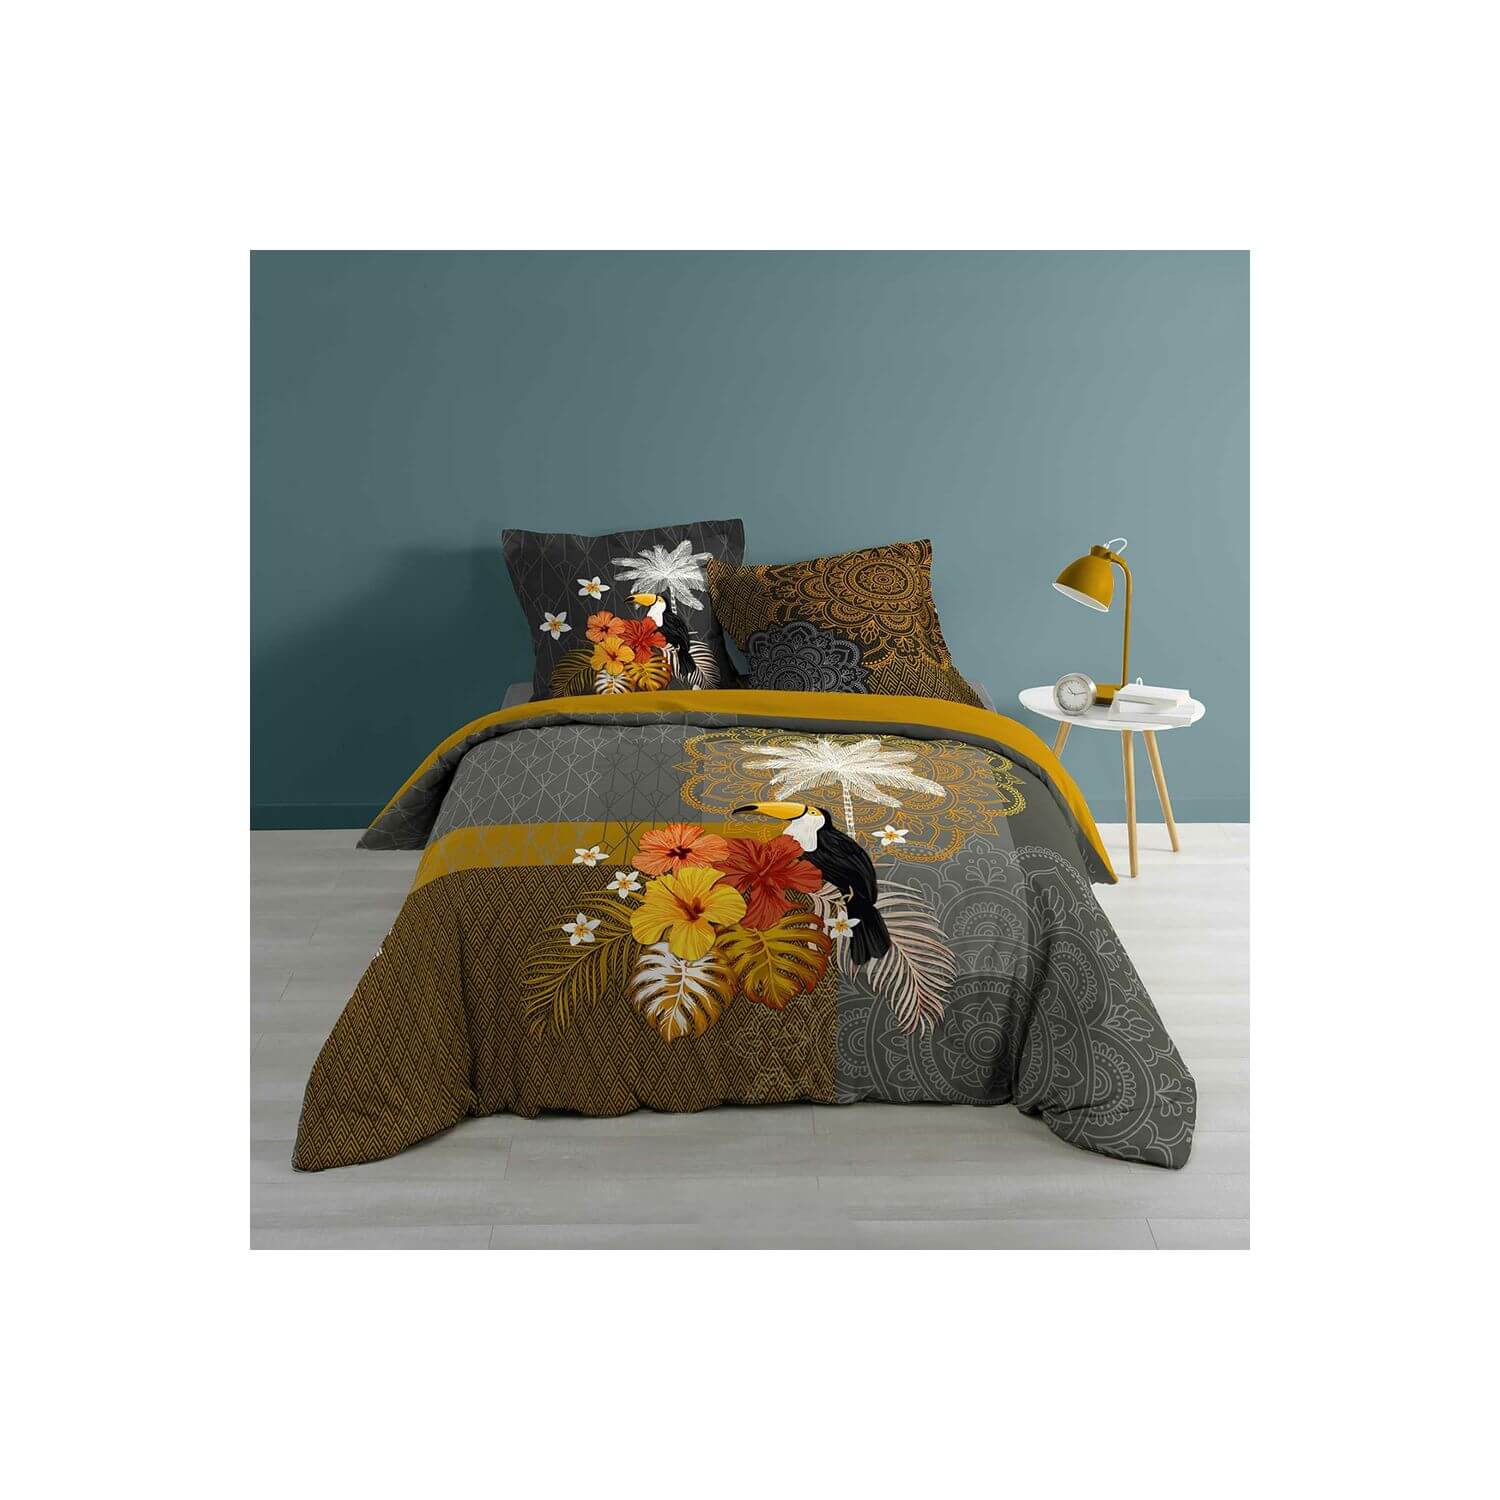 Housse de couette - 240 x 220 cm + taies - Toucan, fleurs et mandalas